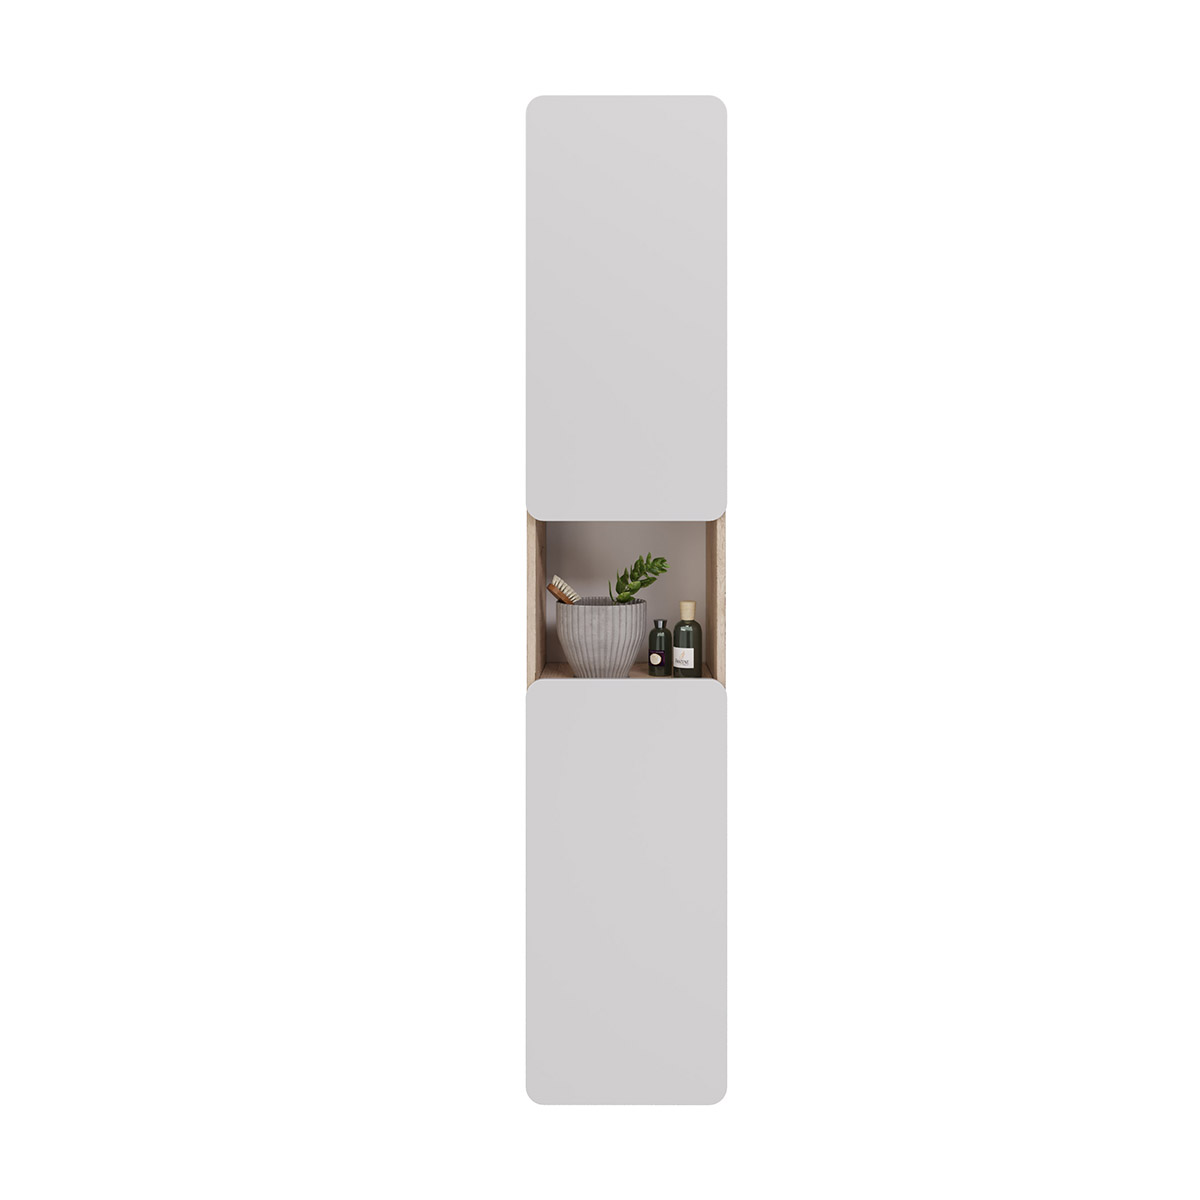 Пенал Lemark OLIVIA 35 см подвесной/напольный, 2-х дверный, открывание лев/прав, цвет корпуса: Дуб кантри, цвет фасада: Белый глянец